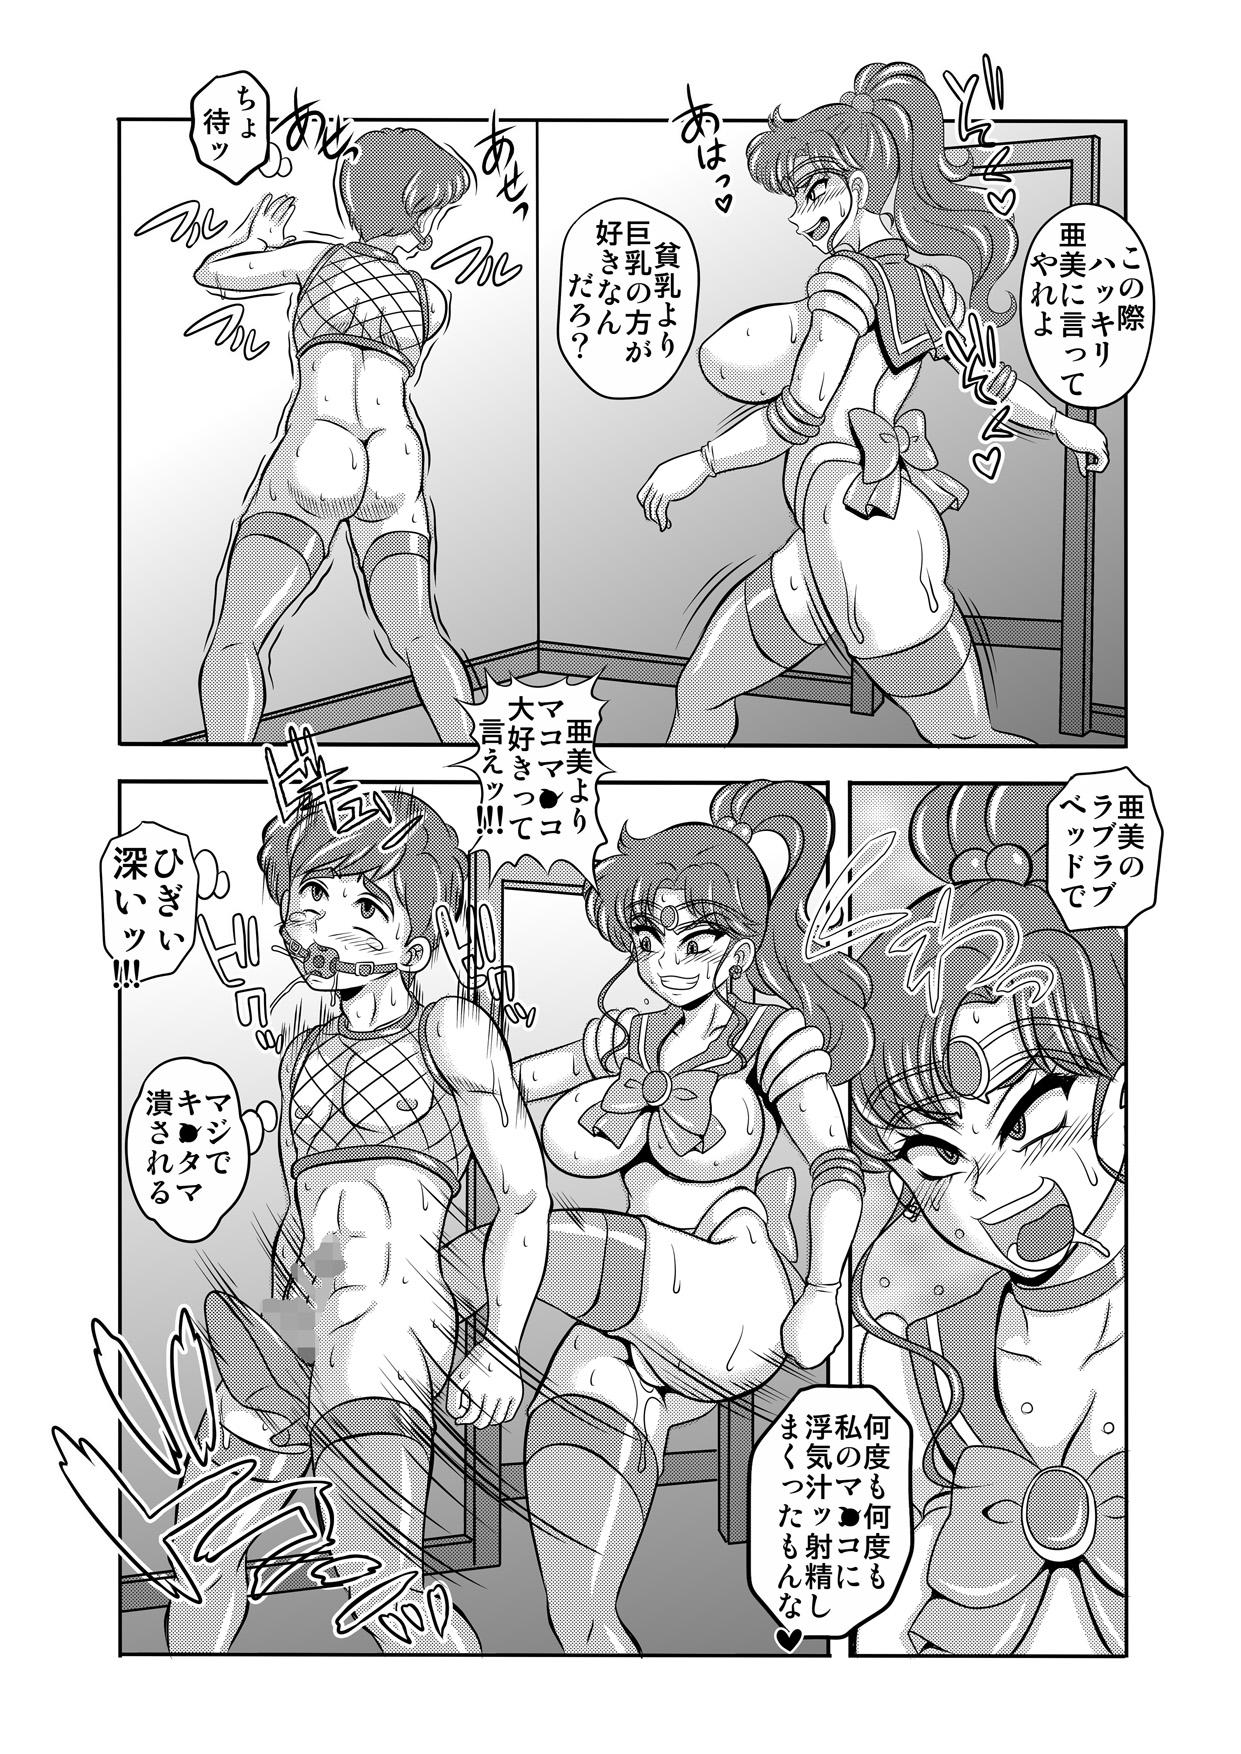 Action Netori Netorare Toshiue Cosplayer-tachi no Yuuwaku 06 - Sailor moon Transex - Page 12